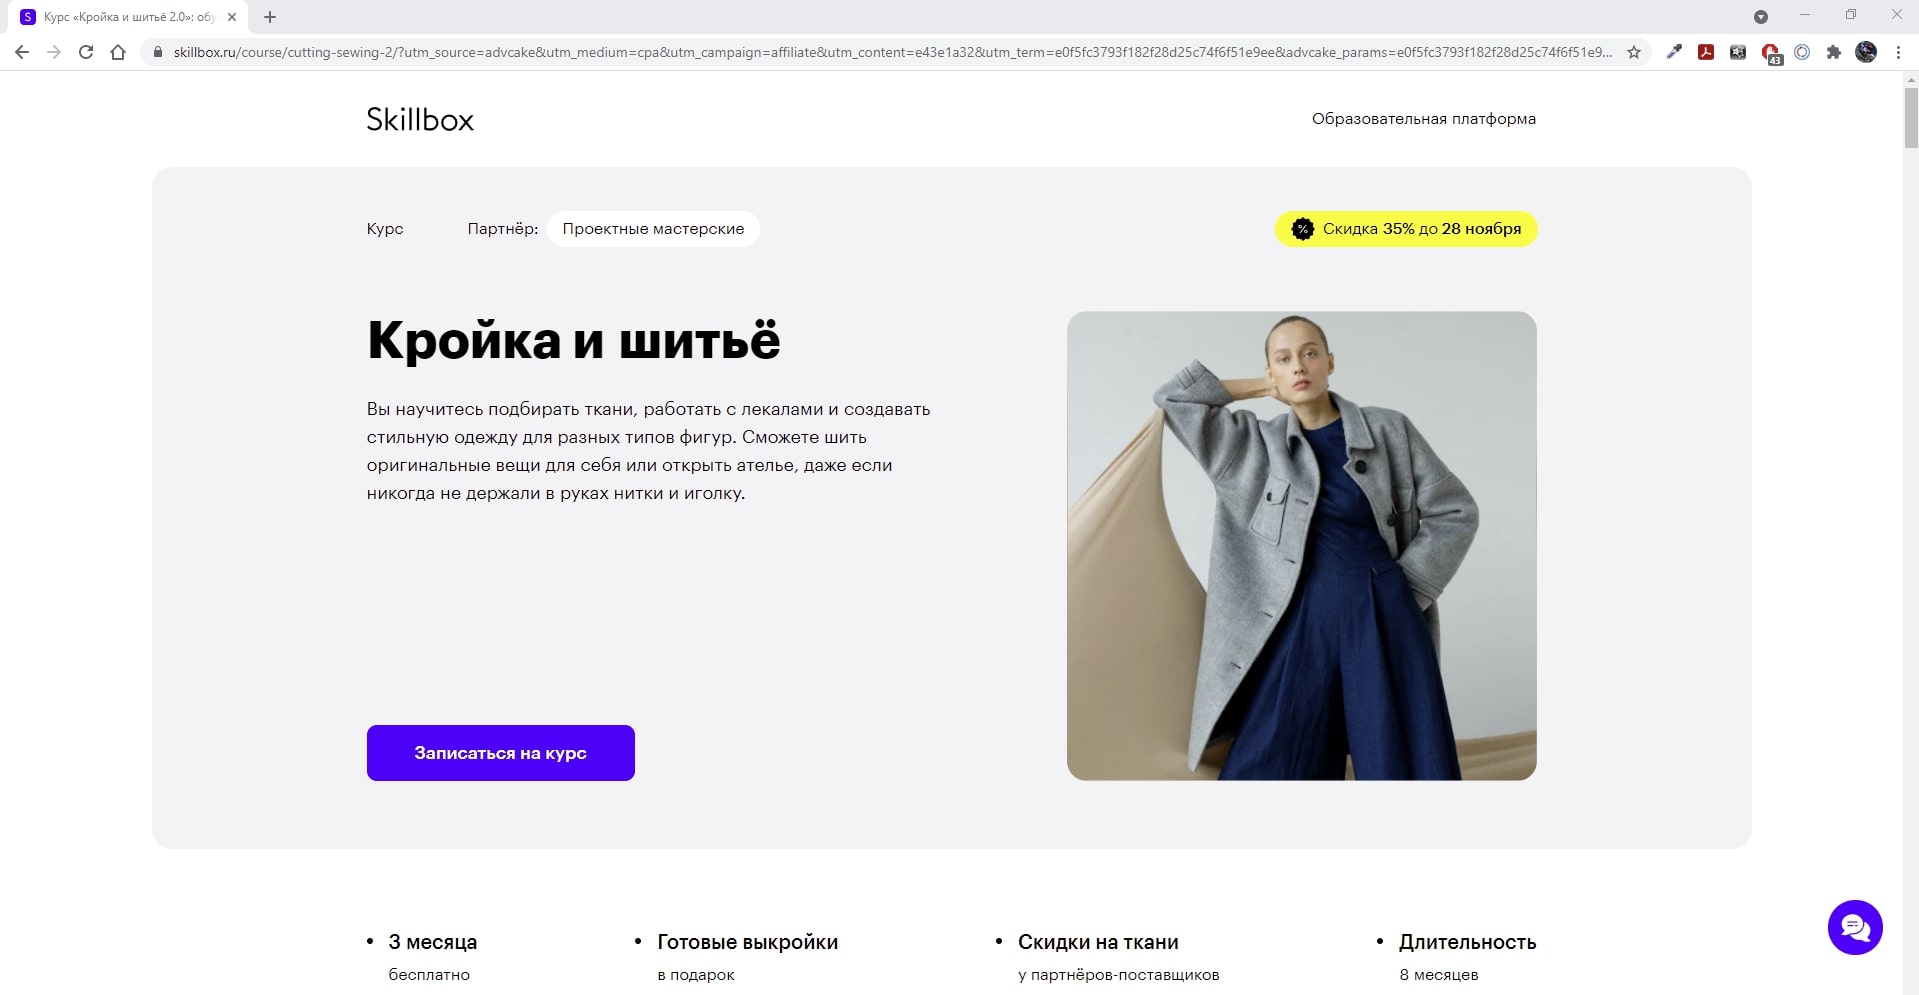 Пошив одежды на заказ в Москве — специалистов, отзывов на Профи